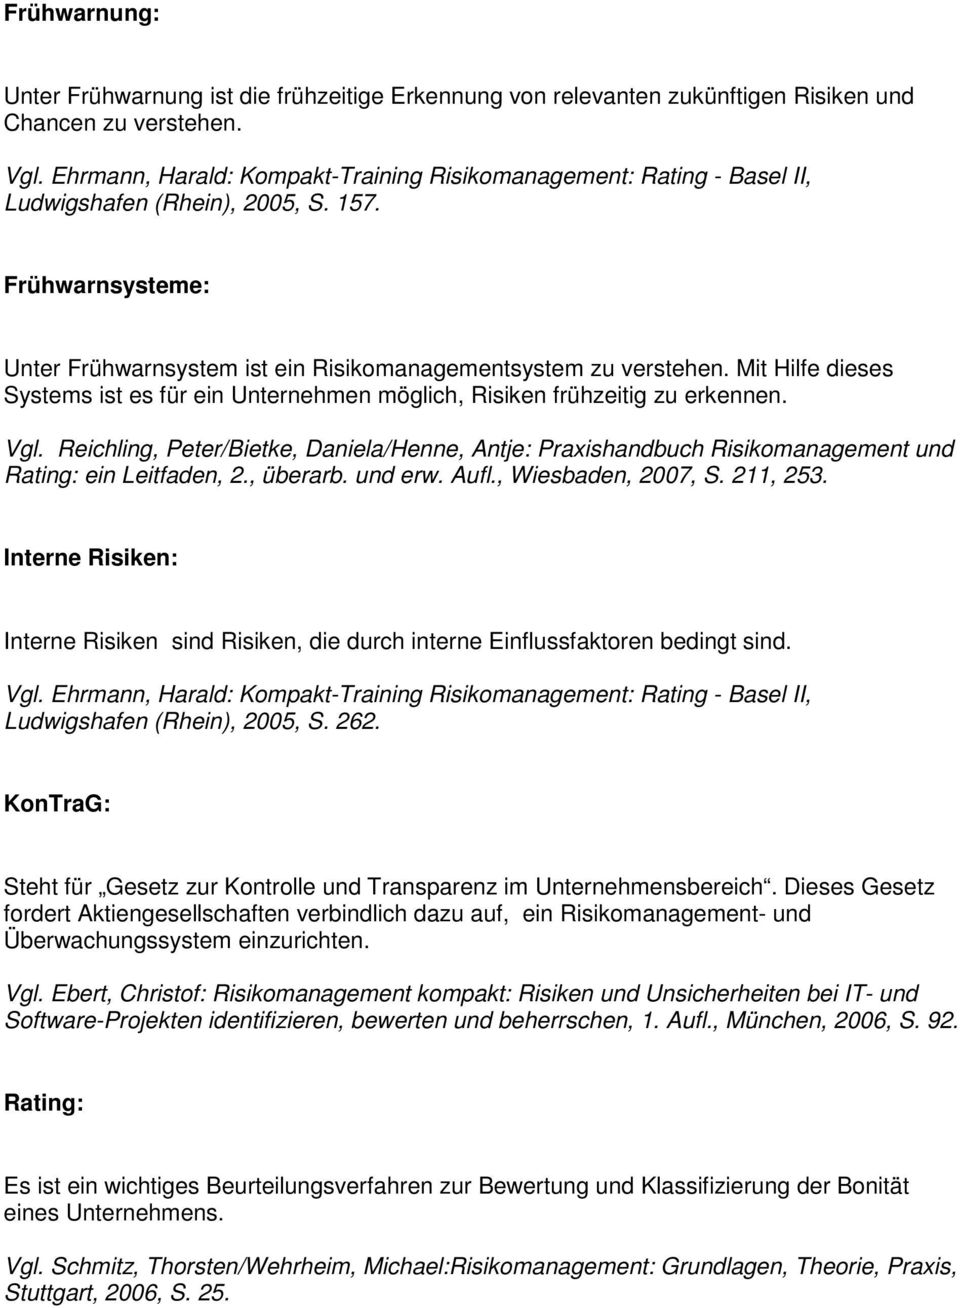 Reichling, Peter/Bietke, Daniela/Henne, Antje: Praxishandbuch Risikomanagement und Rating: ein Leitfaden, 2., überarb. und erw. Aufl., Wiesbaden, 2007, S. 211, 253.